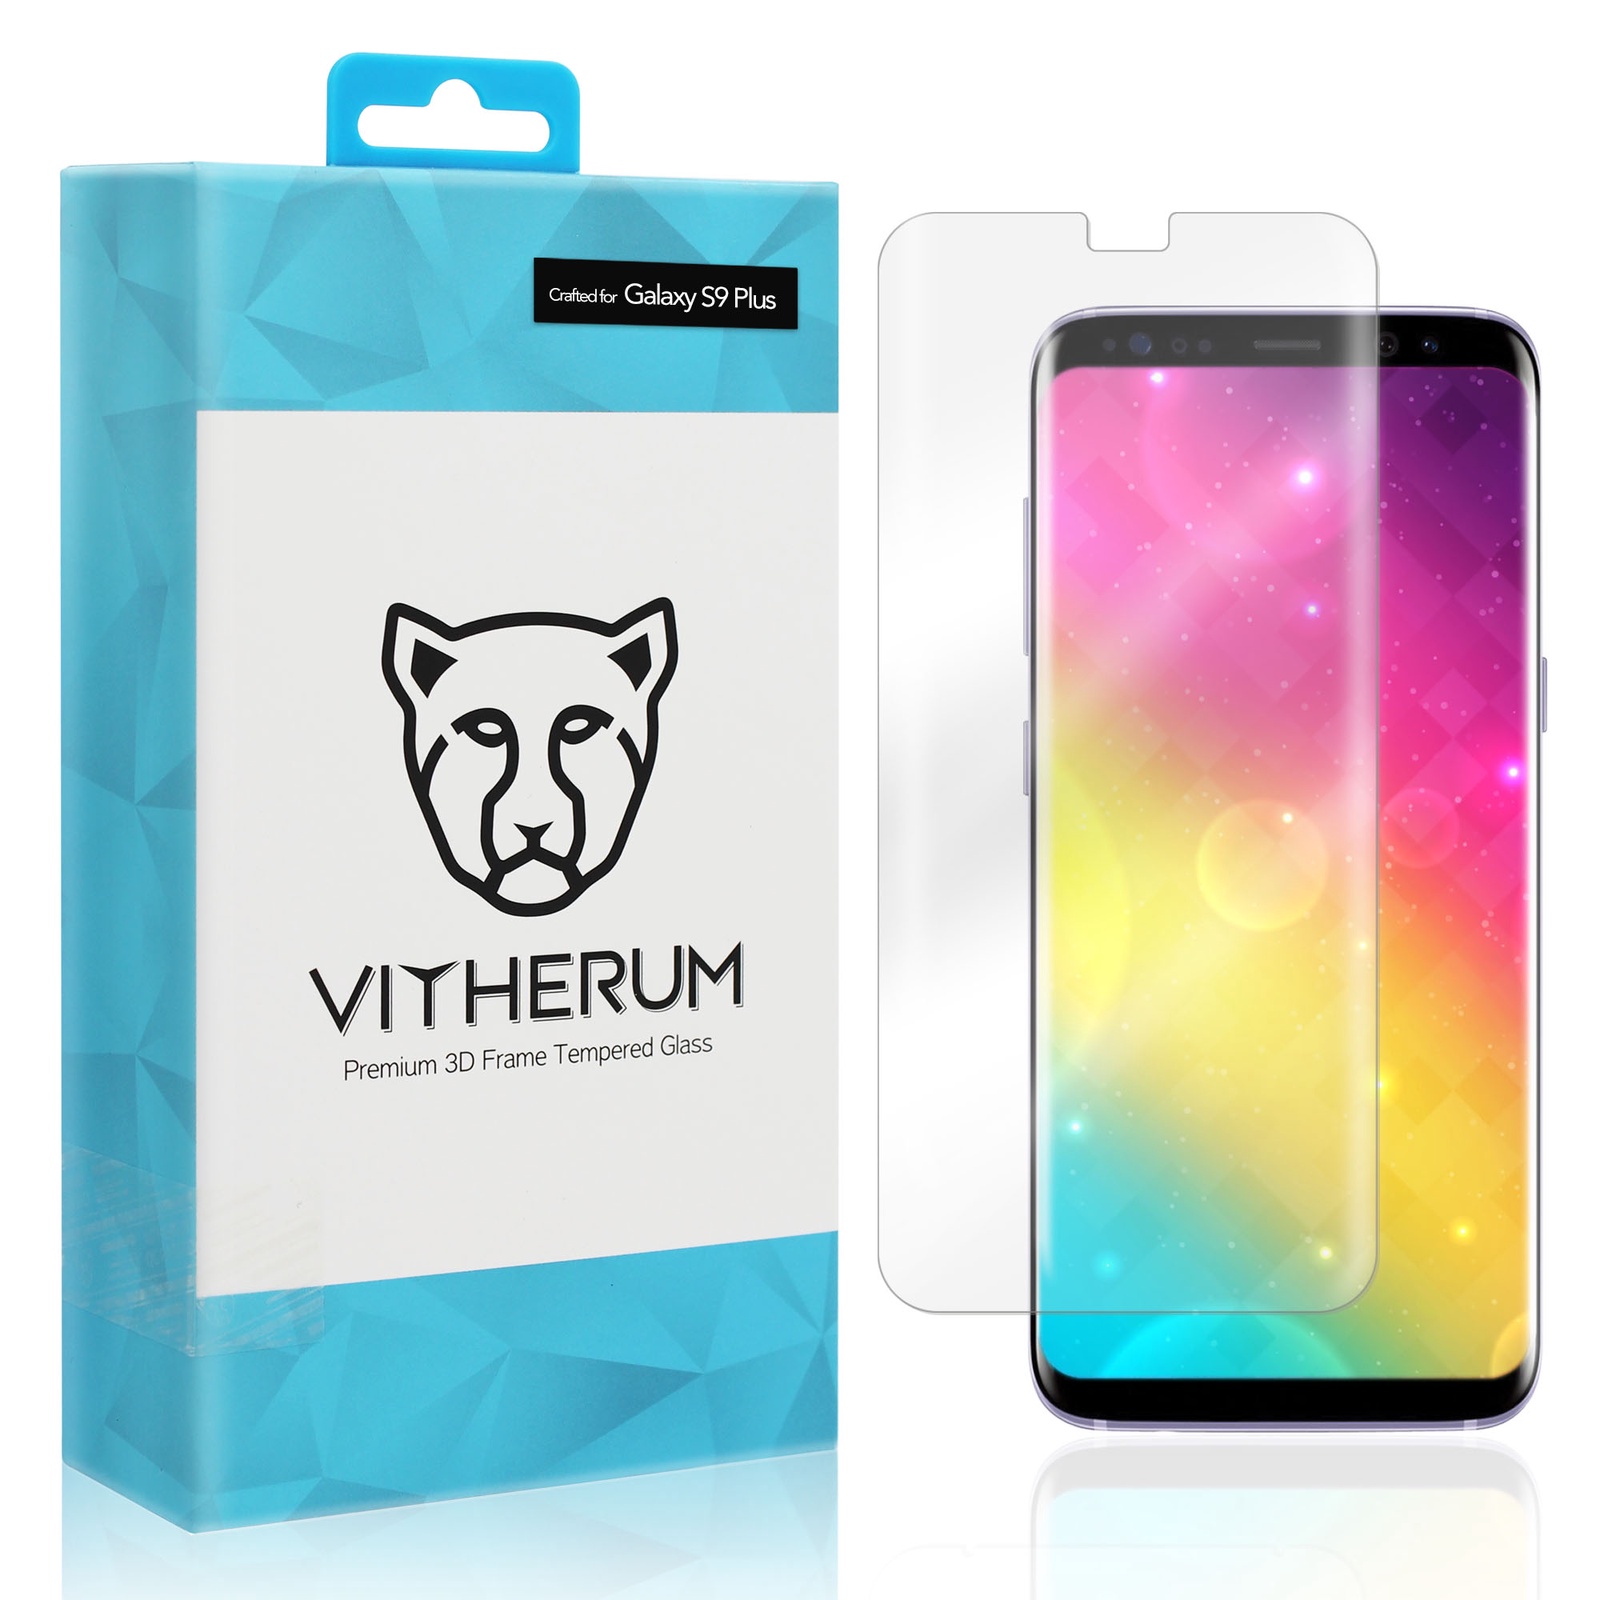 фото Защитное стекло VITHERUM AQUA Premium 3D Curved Full Transparent Tempered Glass для Galaxy S9 Plus (VTHAQU0002)